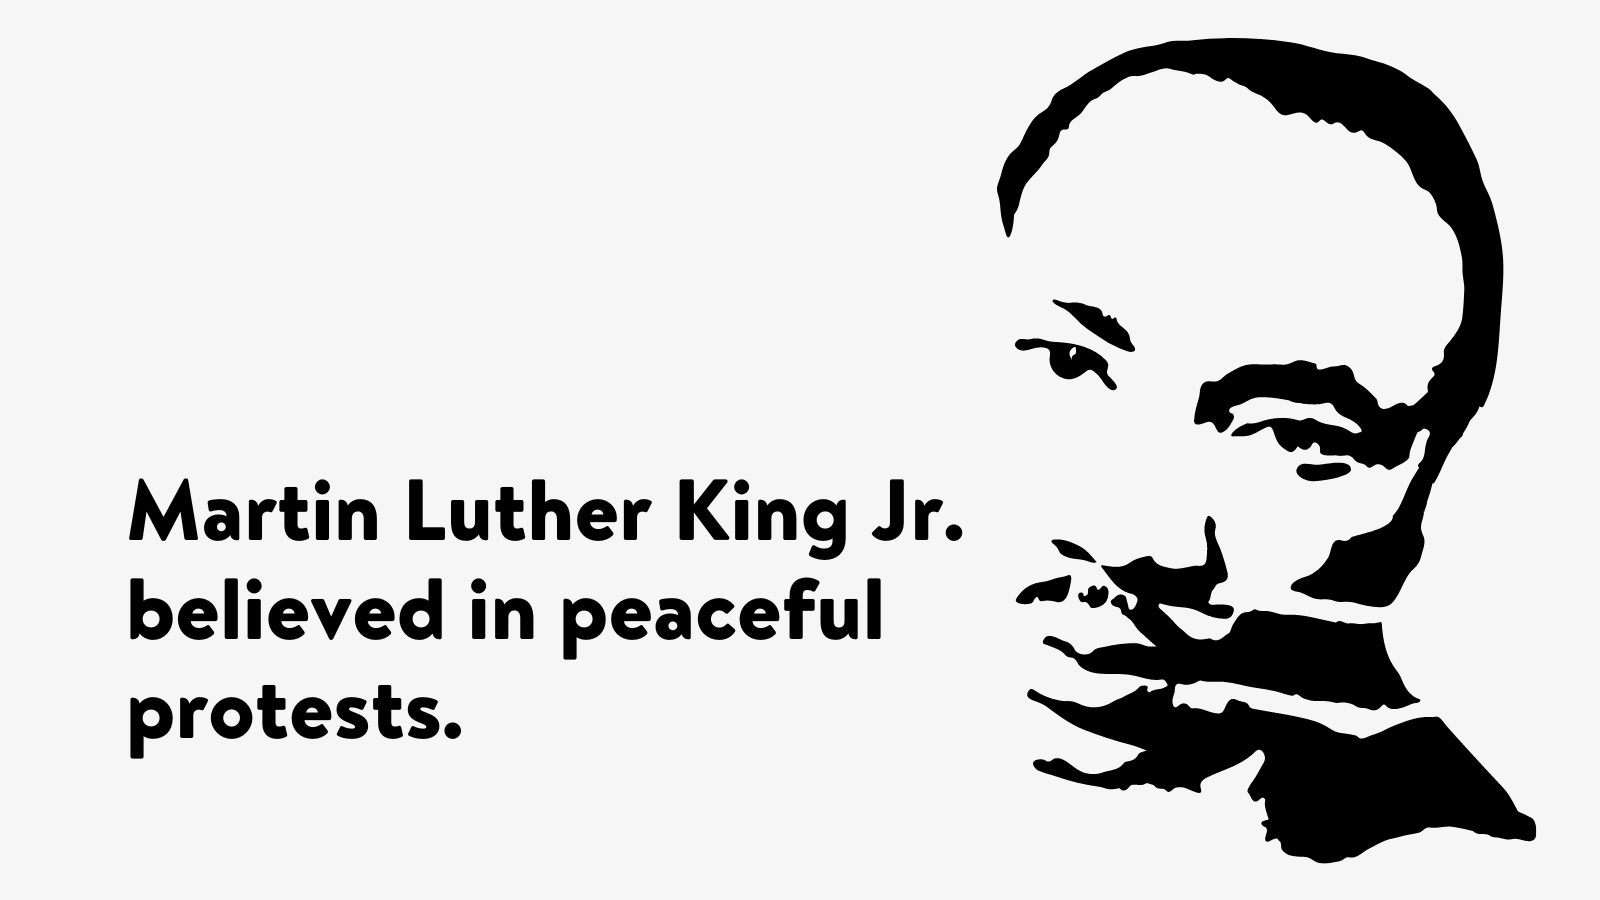  17 aussagekräftige Fakten über Martin Luther King Jr.